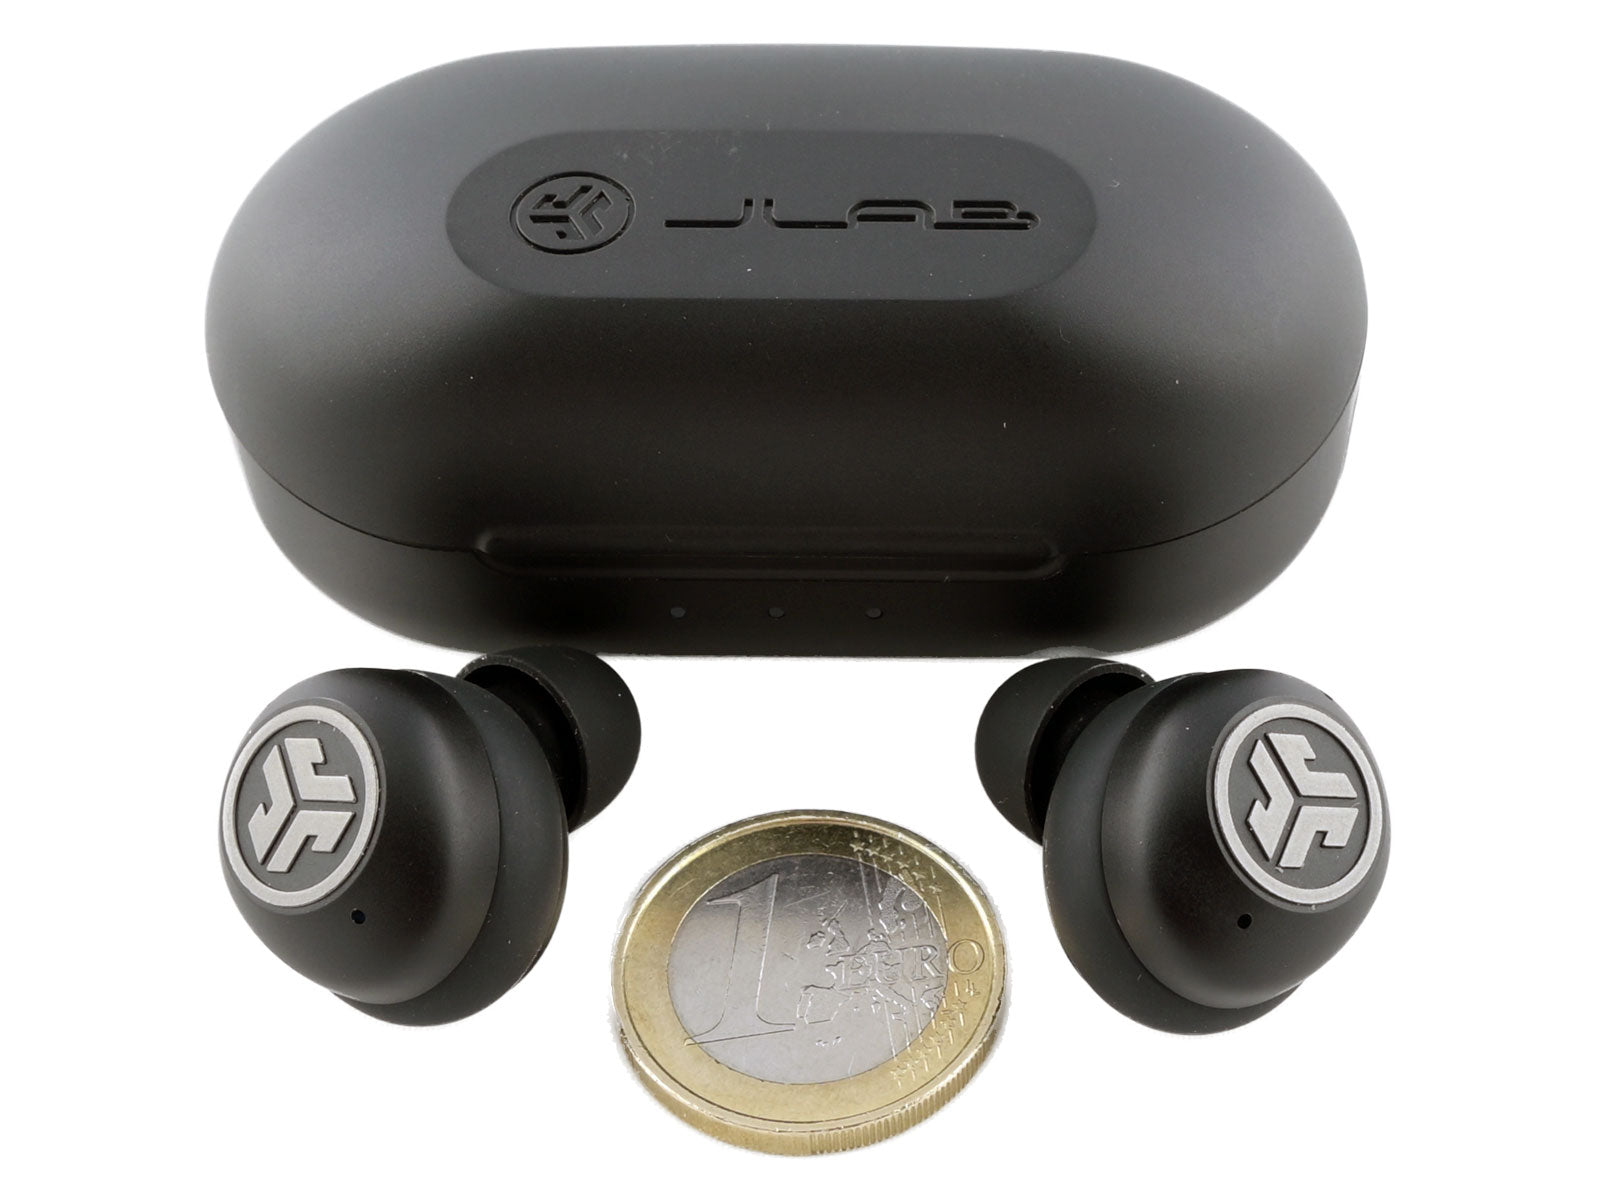 JLab JBuds Air ANC True Wireless Earbuds In-Ear Kopfhörer Zwei schwarze kabellose Ohrhörer mit dem JLab-Logo und einem Ladeetui dahinter, daneben eine Ein-Euro-Münze für den Größenvergleich auf weißem Hintergrund. 